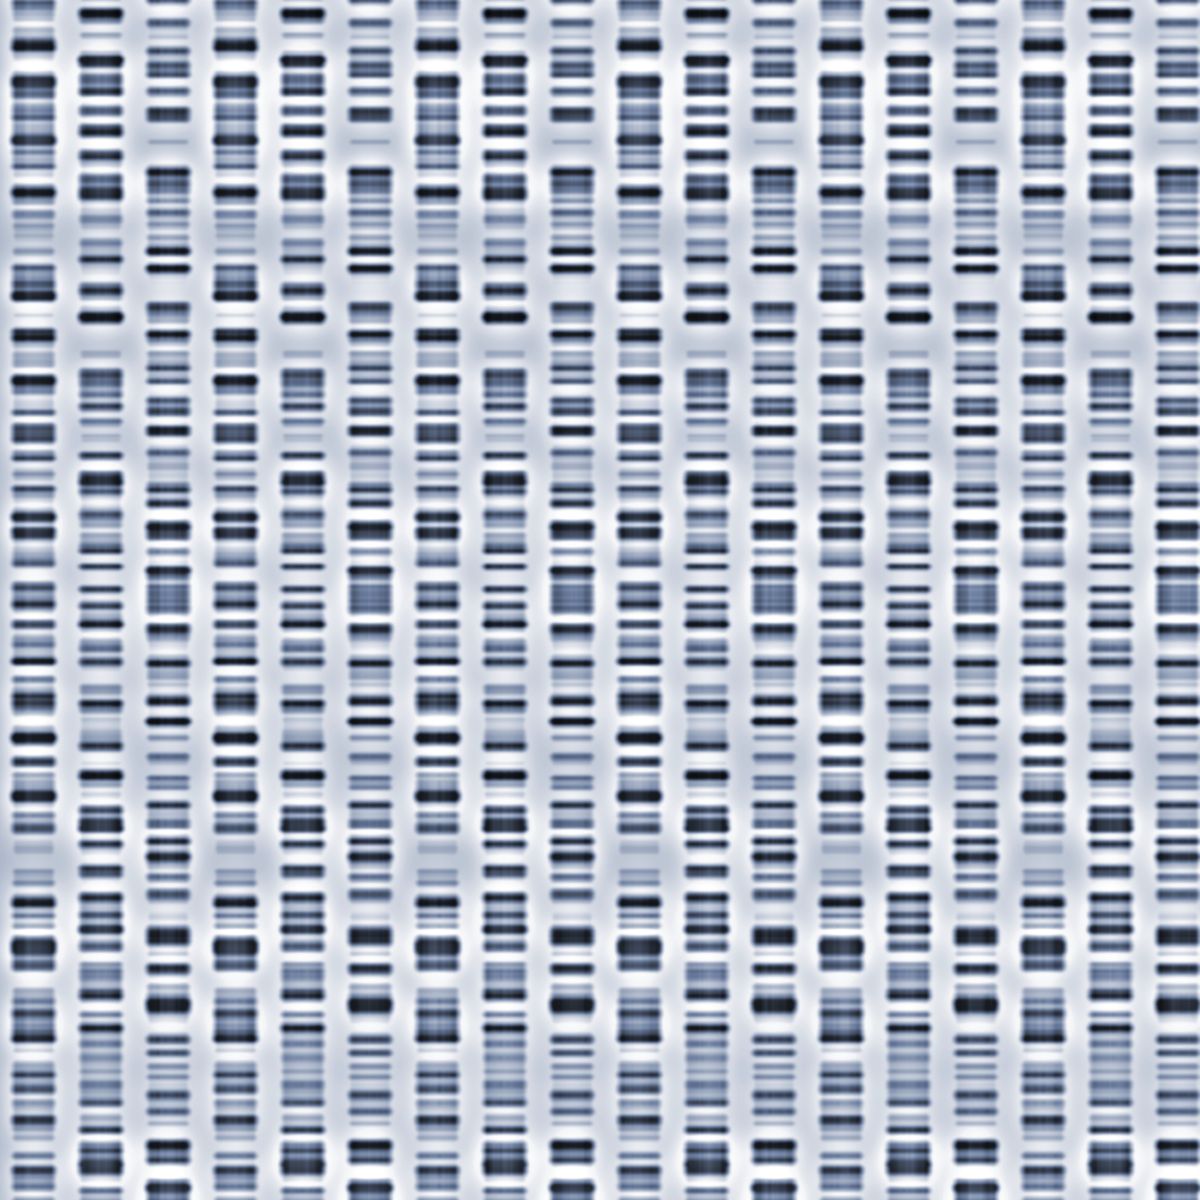 DNA sequences